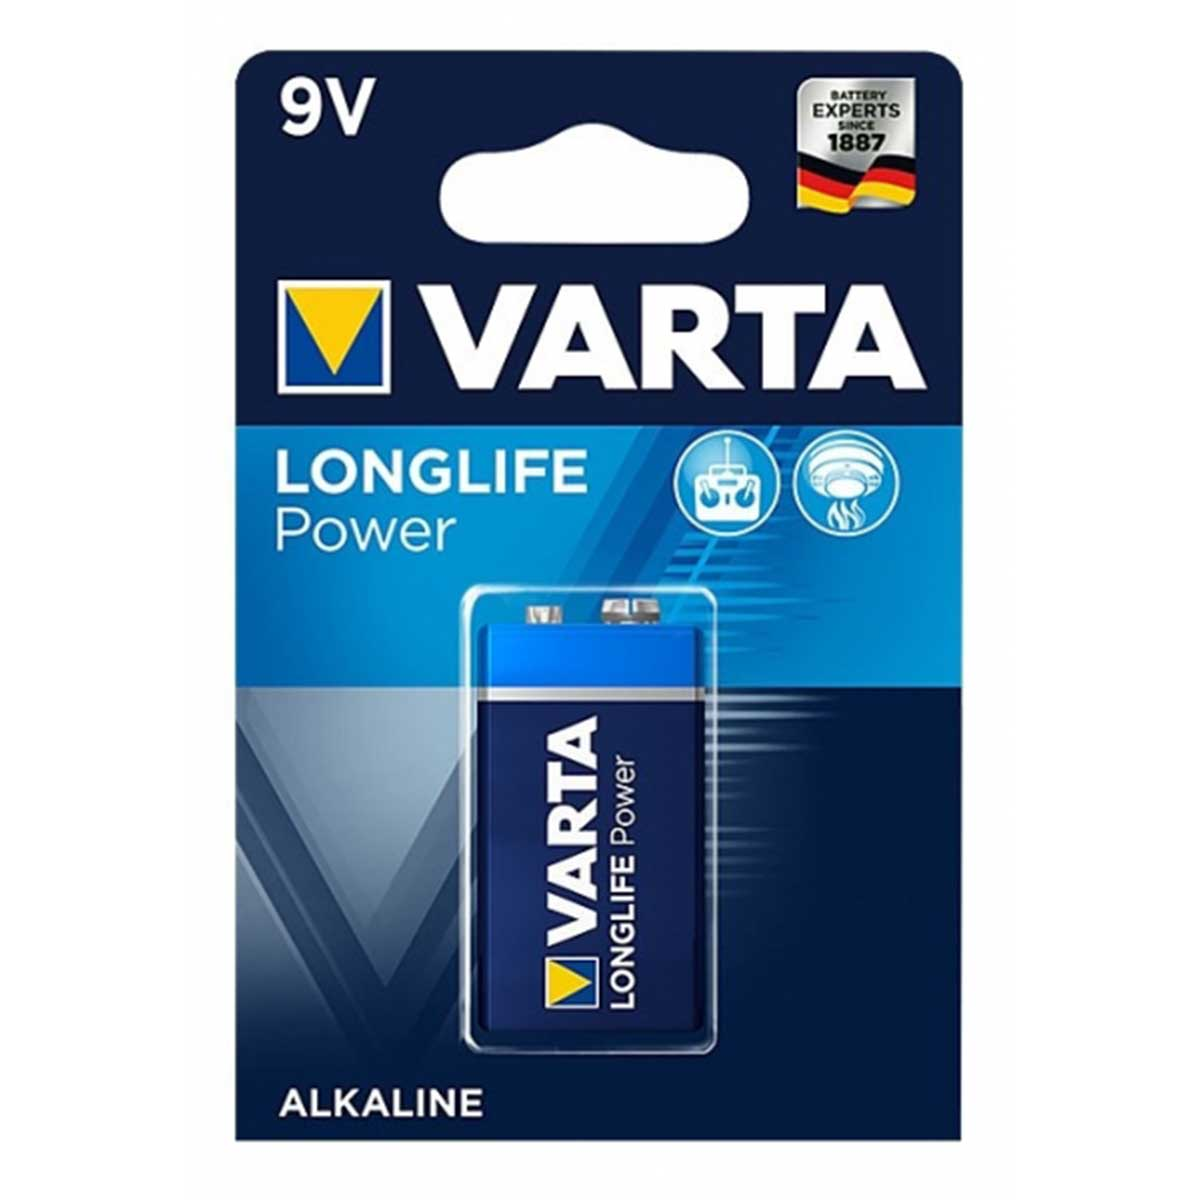 9V Distancia VARTA Volt, 9 6LR61 Longlife Power 4922 Block Batterie Batterie, Blister) Ah AlMn, (1er Mando 0.58